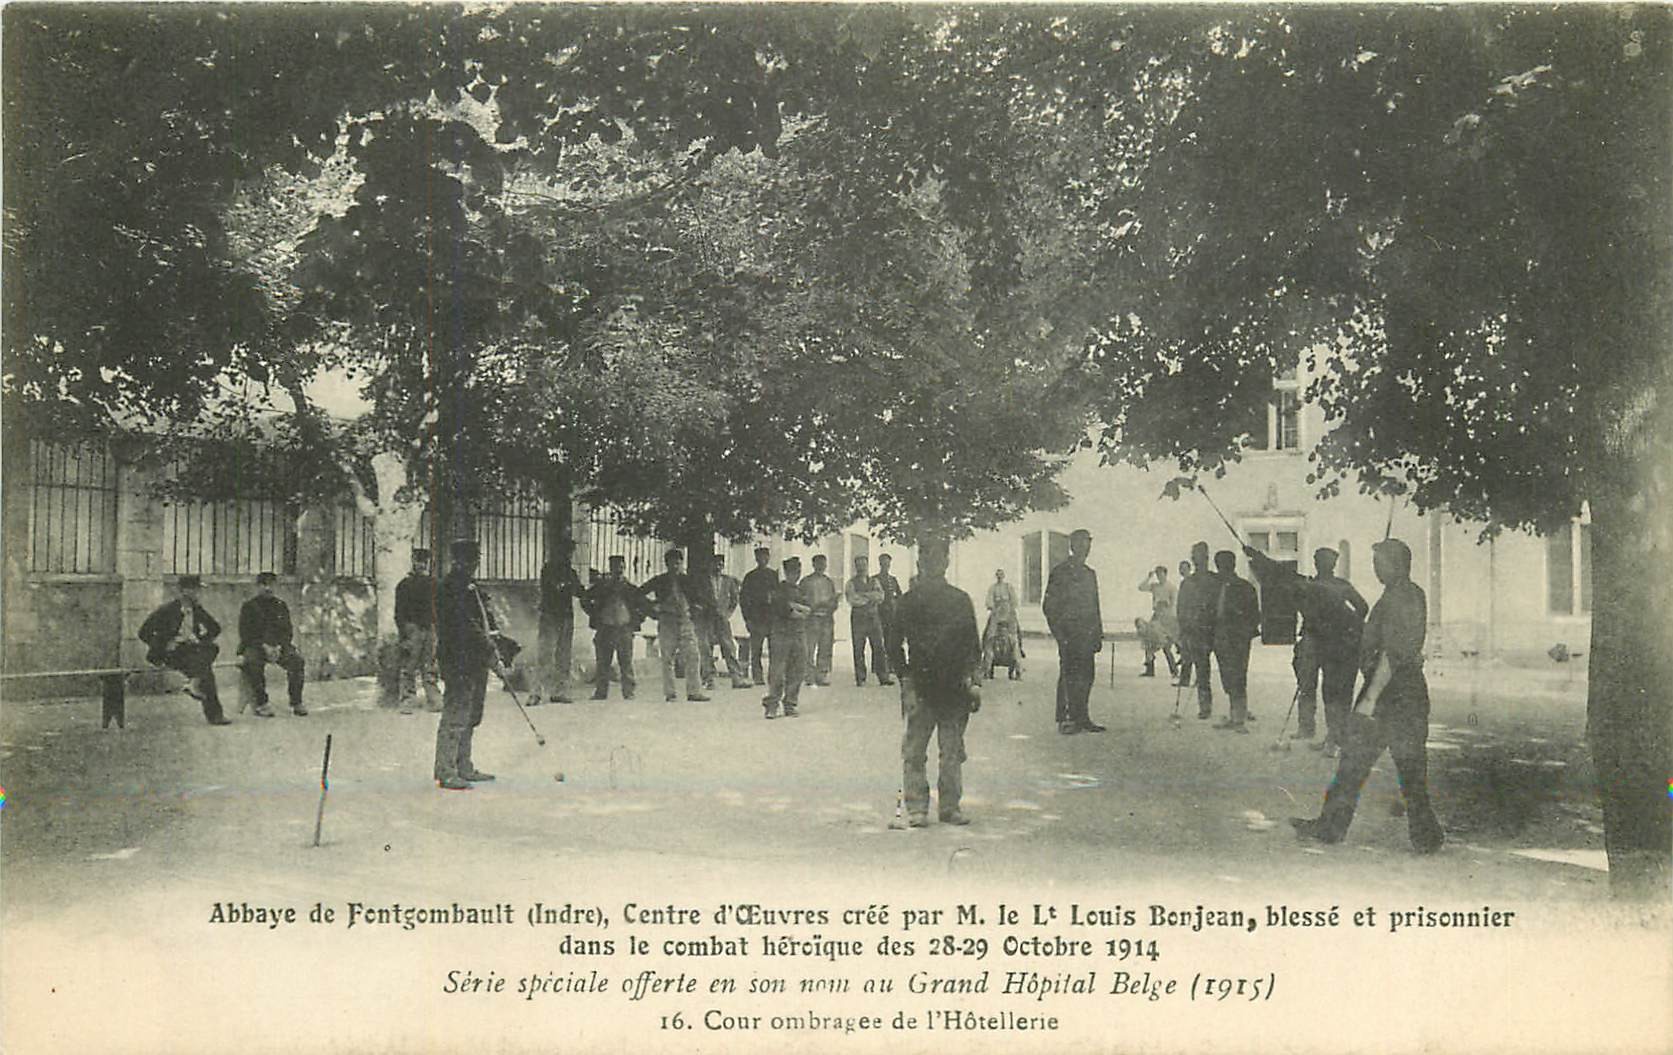 36 ABBAYE DE FONTGOMBAULT. Centre d'Oeuvres pour blessé et prisonnier d'Octobre 1914